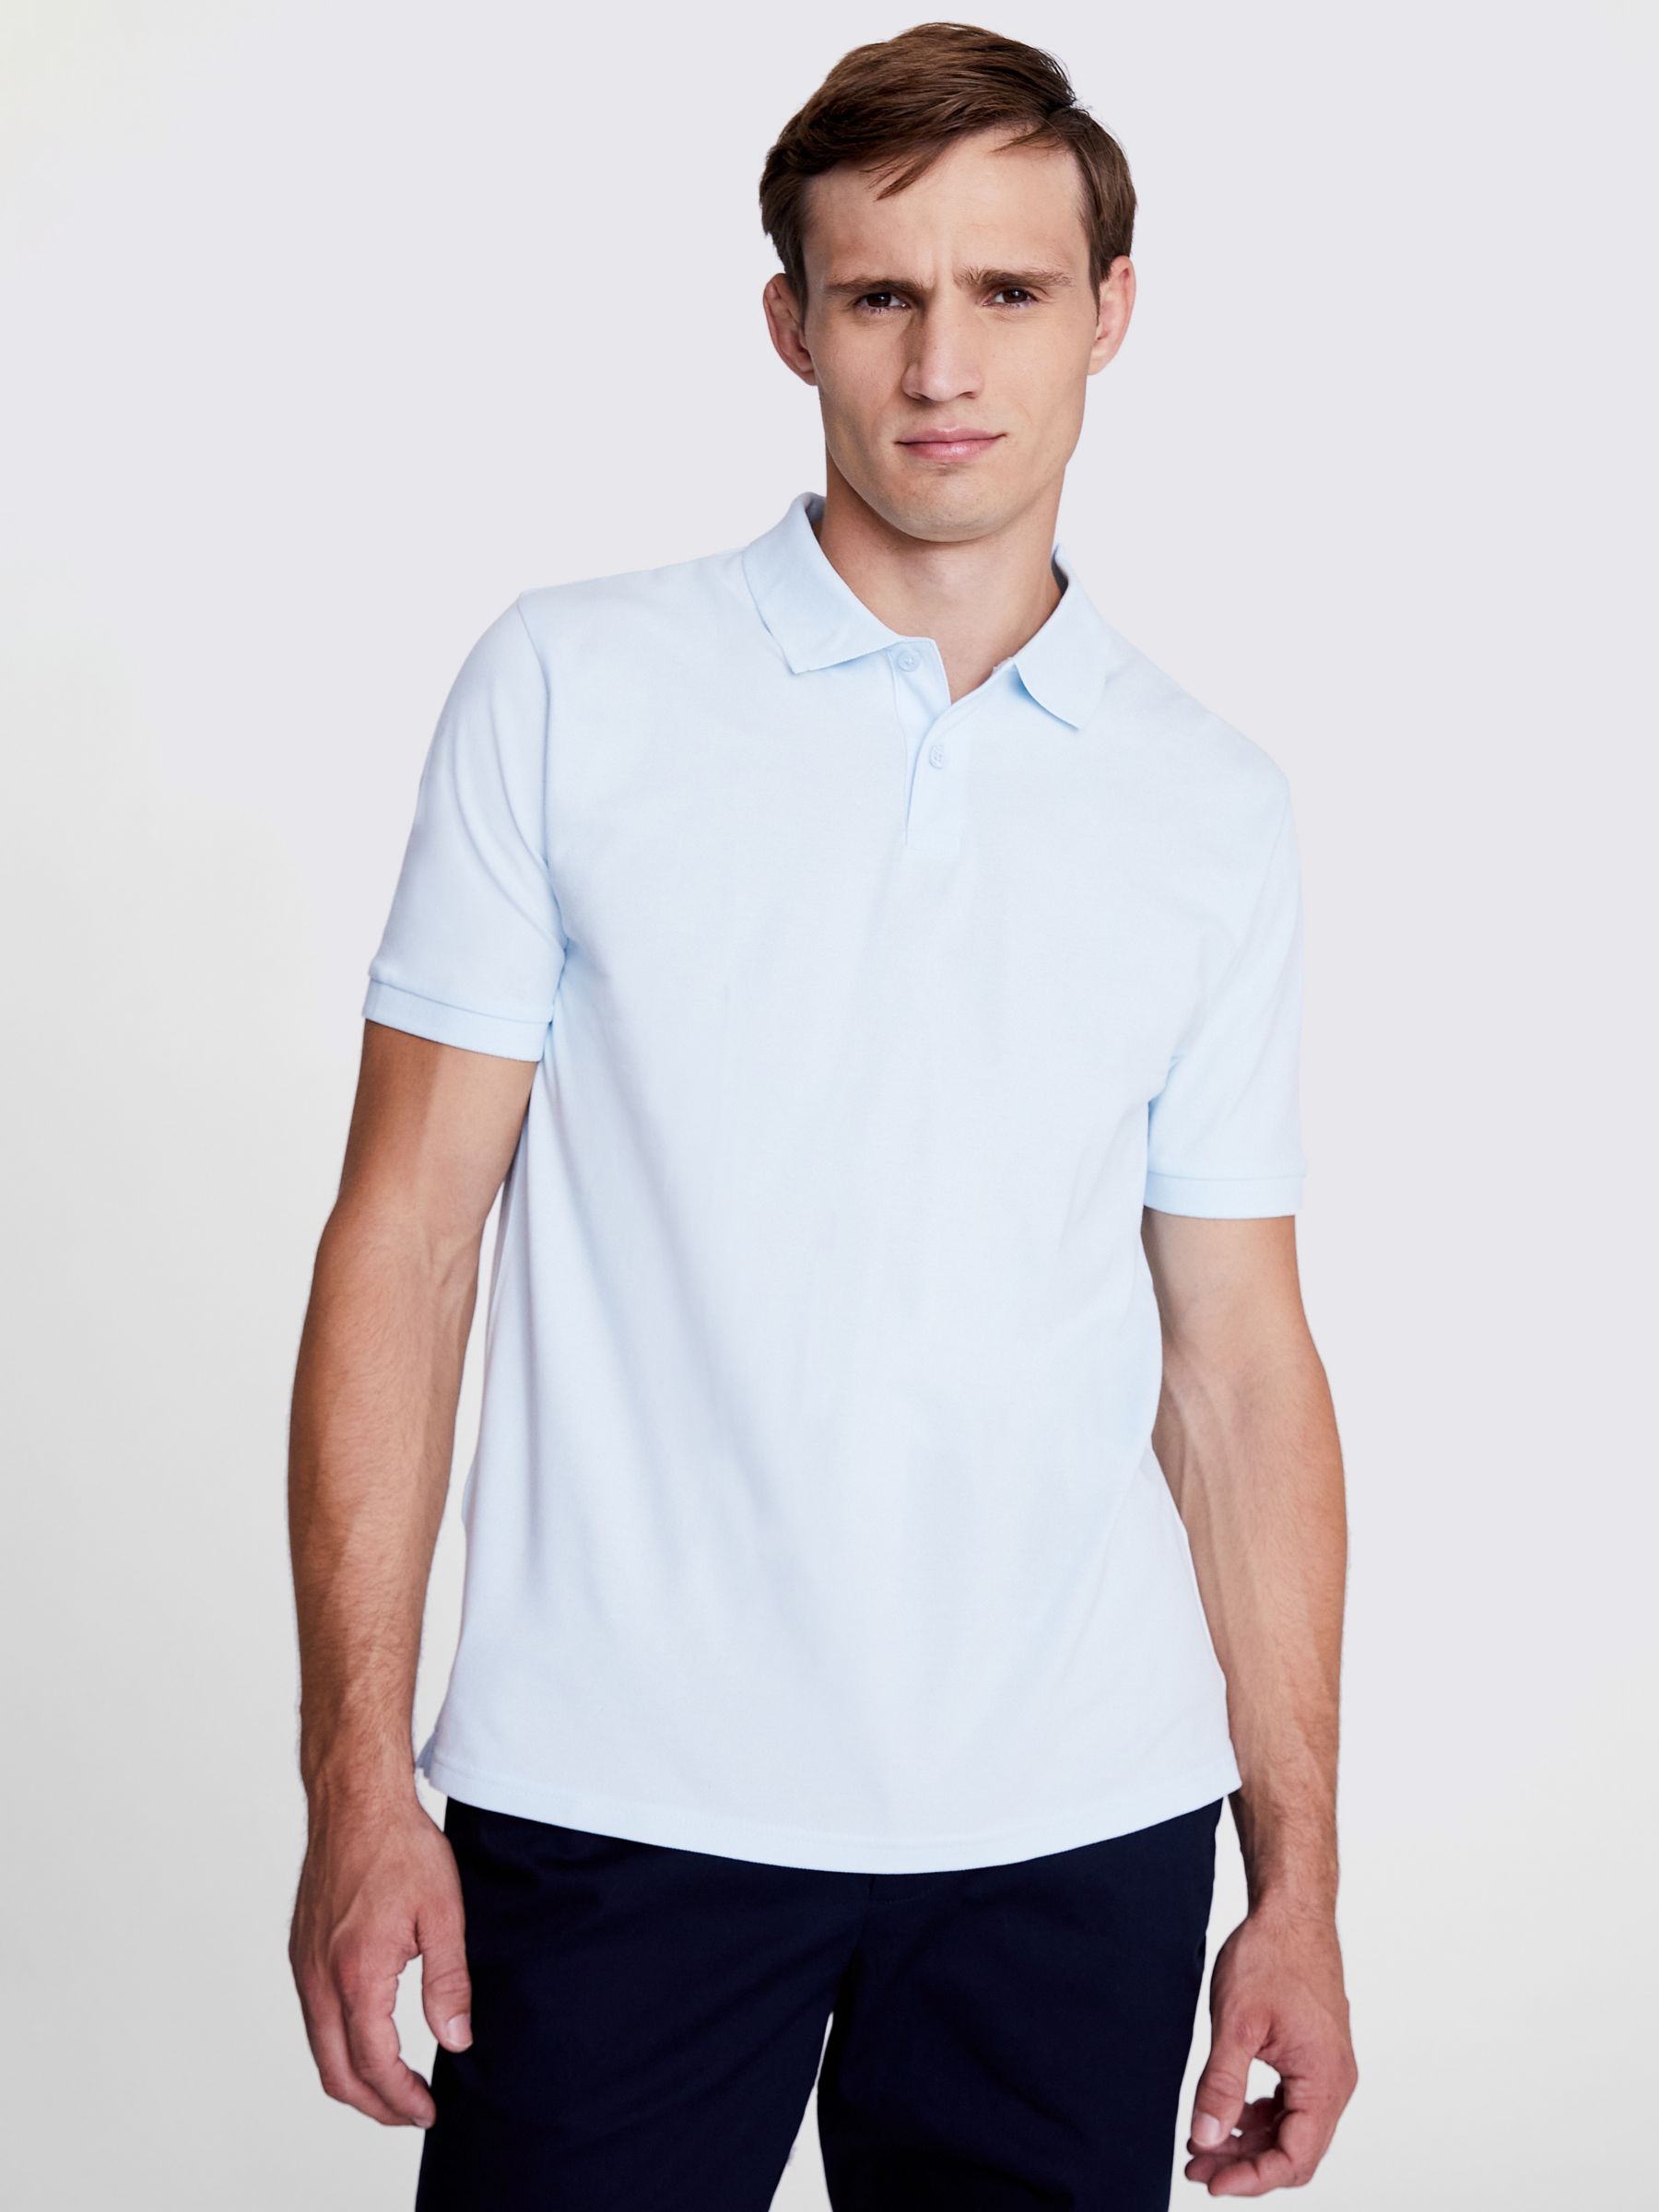 Moss Pique Short Sleeve Polo Shirt, Light Blue, S